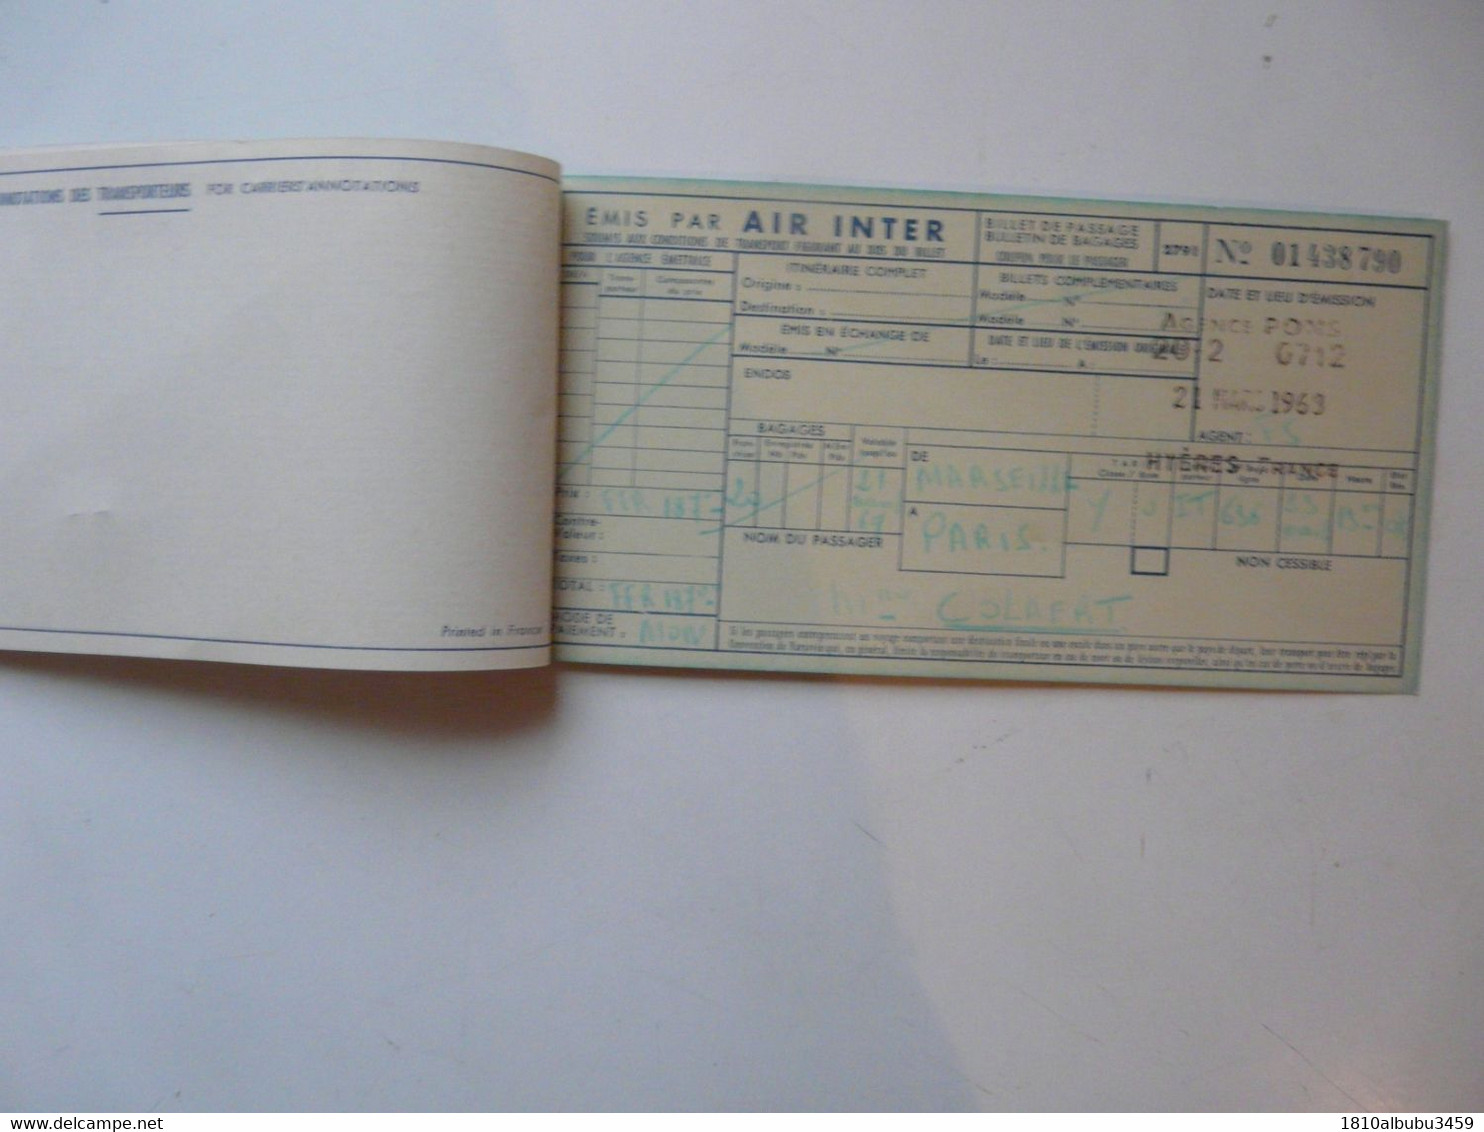 VIEUX PAPIERS - TITRE DE TRANSPORT : Lignes Aériennes Intérieures 1954 - Europe